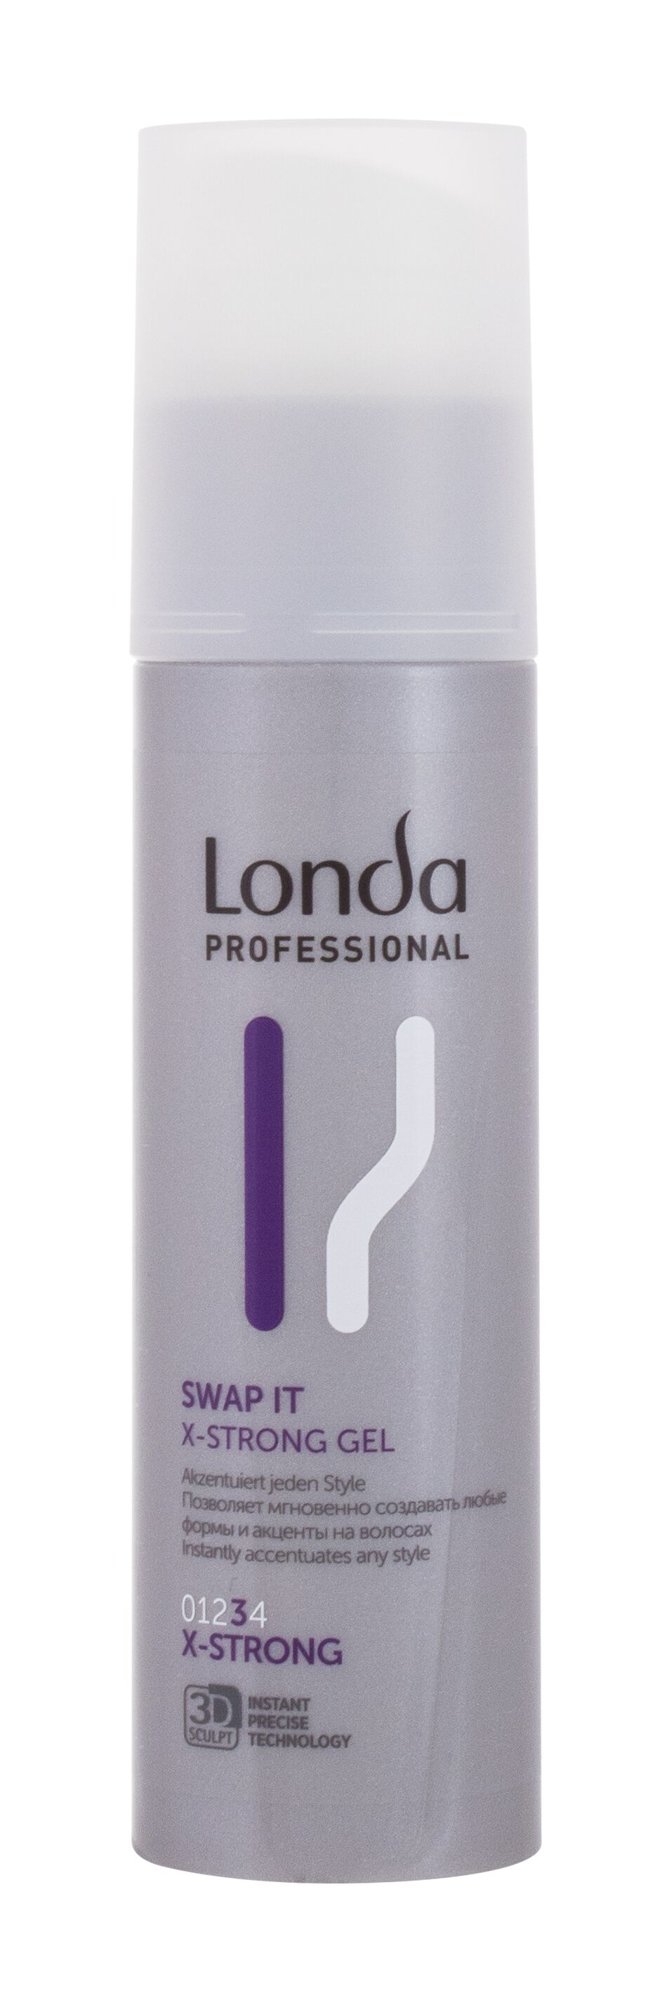 Londa Professional Swap It X-Strong Gel plaukų želė